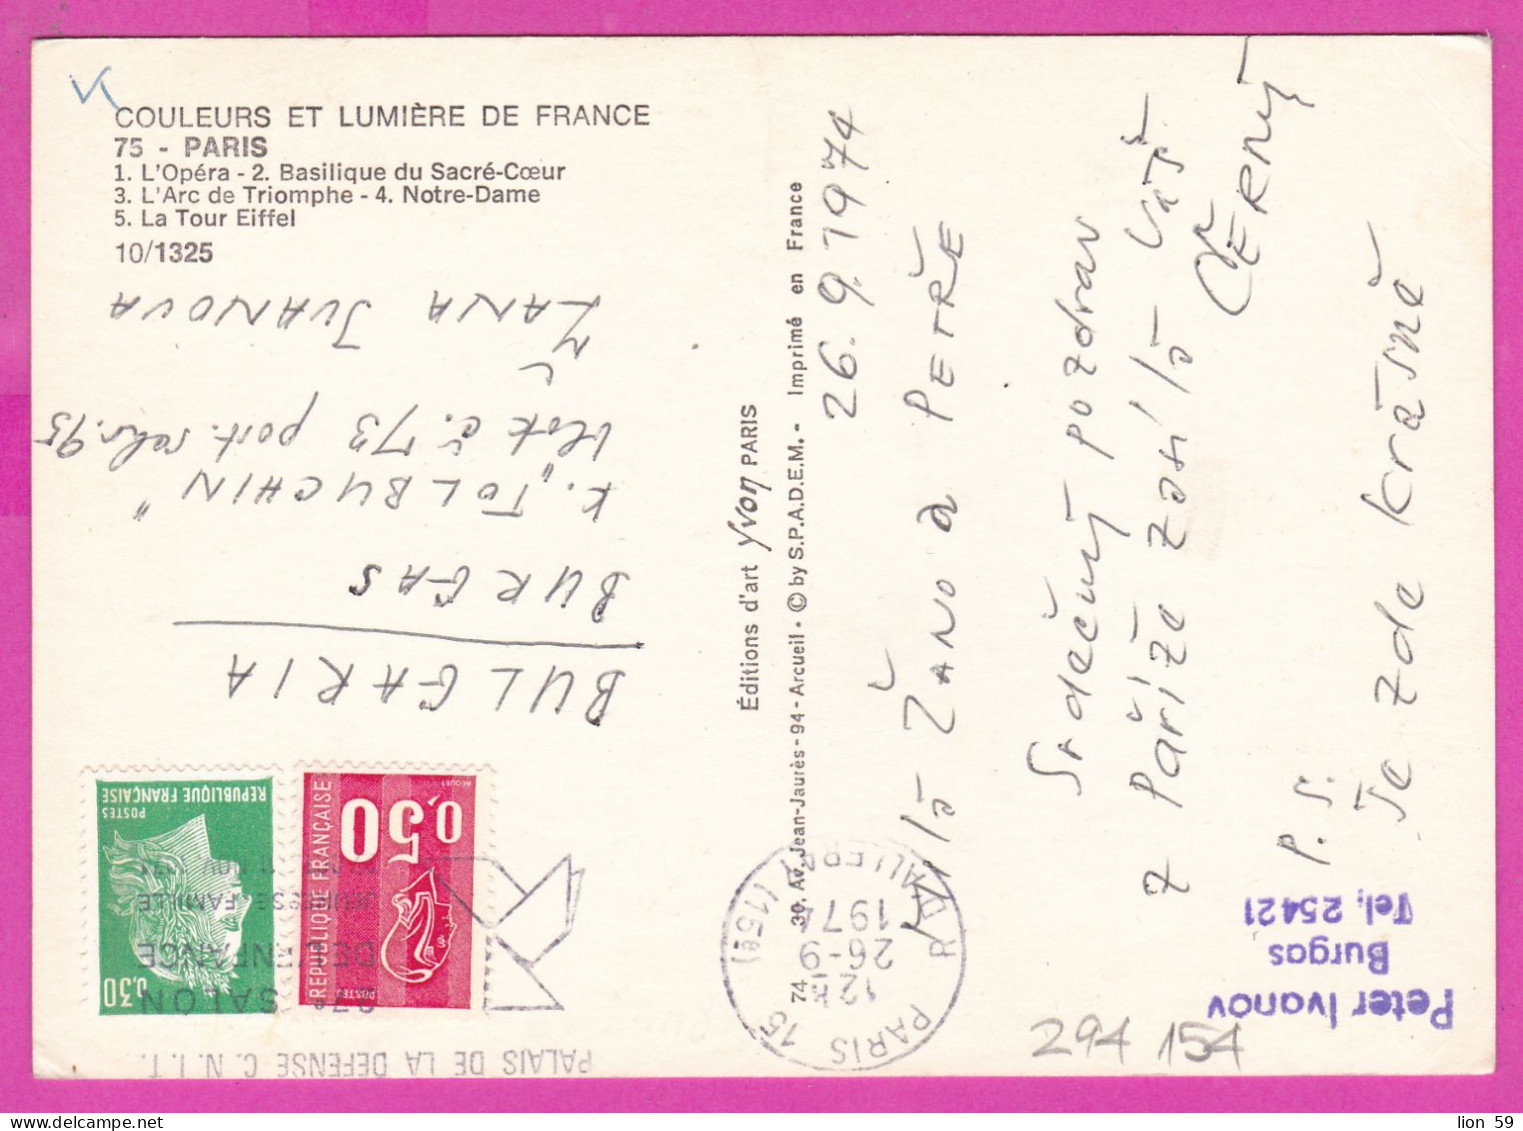 294154 / France PARIS Opera Tour Eiffel PC 1974 USED 0.30+0.50 Fr. Marianne de Béquet ,Marianne de Cheffel Flamme CNIT